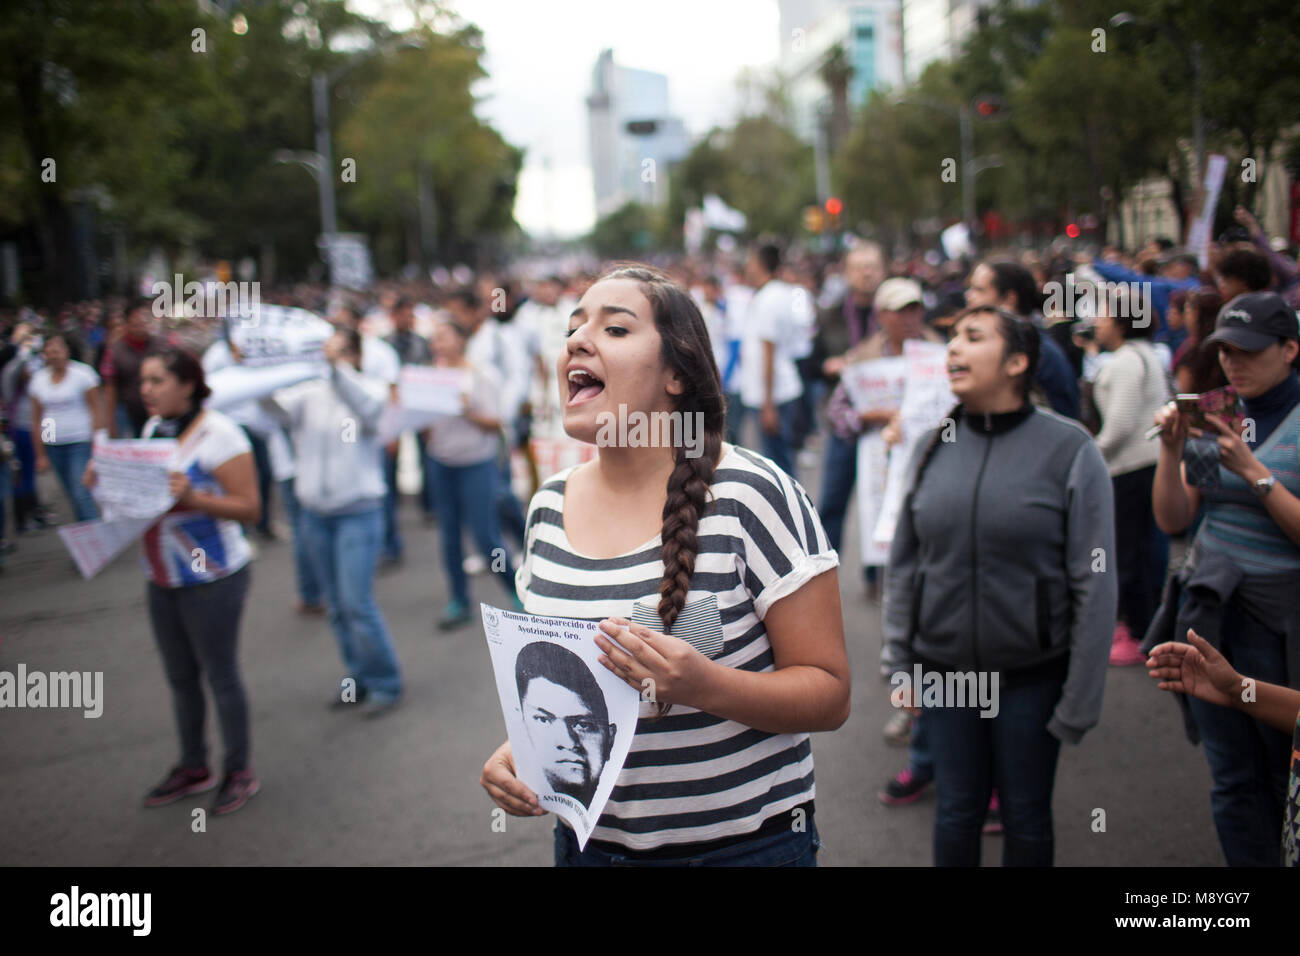 La gente marcha a través de la Ciudad de México protestando por el regreso de 43 desaparecidos Normalista estudiantes que fueron tomadas de Ayotzinapa de pedagogía en Iguala, México, durante el "Día de Acción Global por Ayotzinapa', el miércoles 23 de octubre de 2014. Tres estudiantes fueron asesinados y otros 43 han desaparecido desde el 26 de septiembre de 2014. El alcalde y su esposa fueron acusados de ordenar los secuestros y asesinatos. La policía local también fueron acusados de colaborar con los Guerreros Unidos cártel en los crímenes. Foto de stock